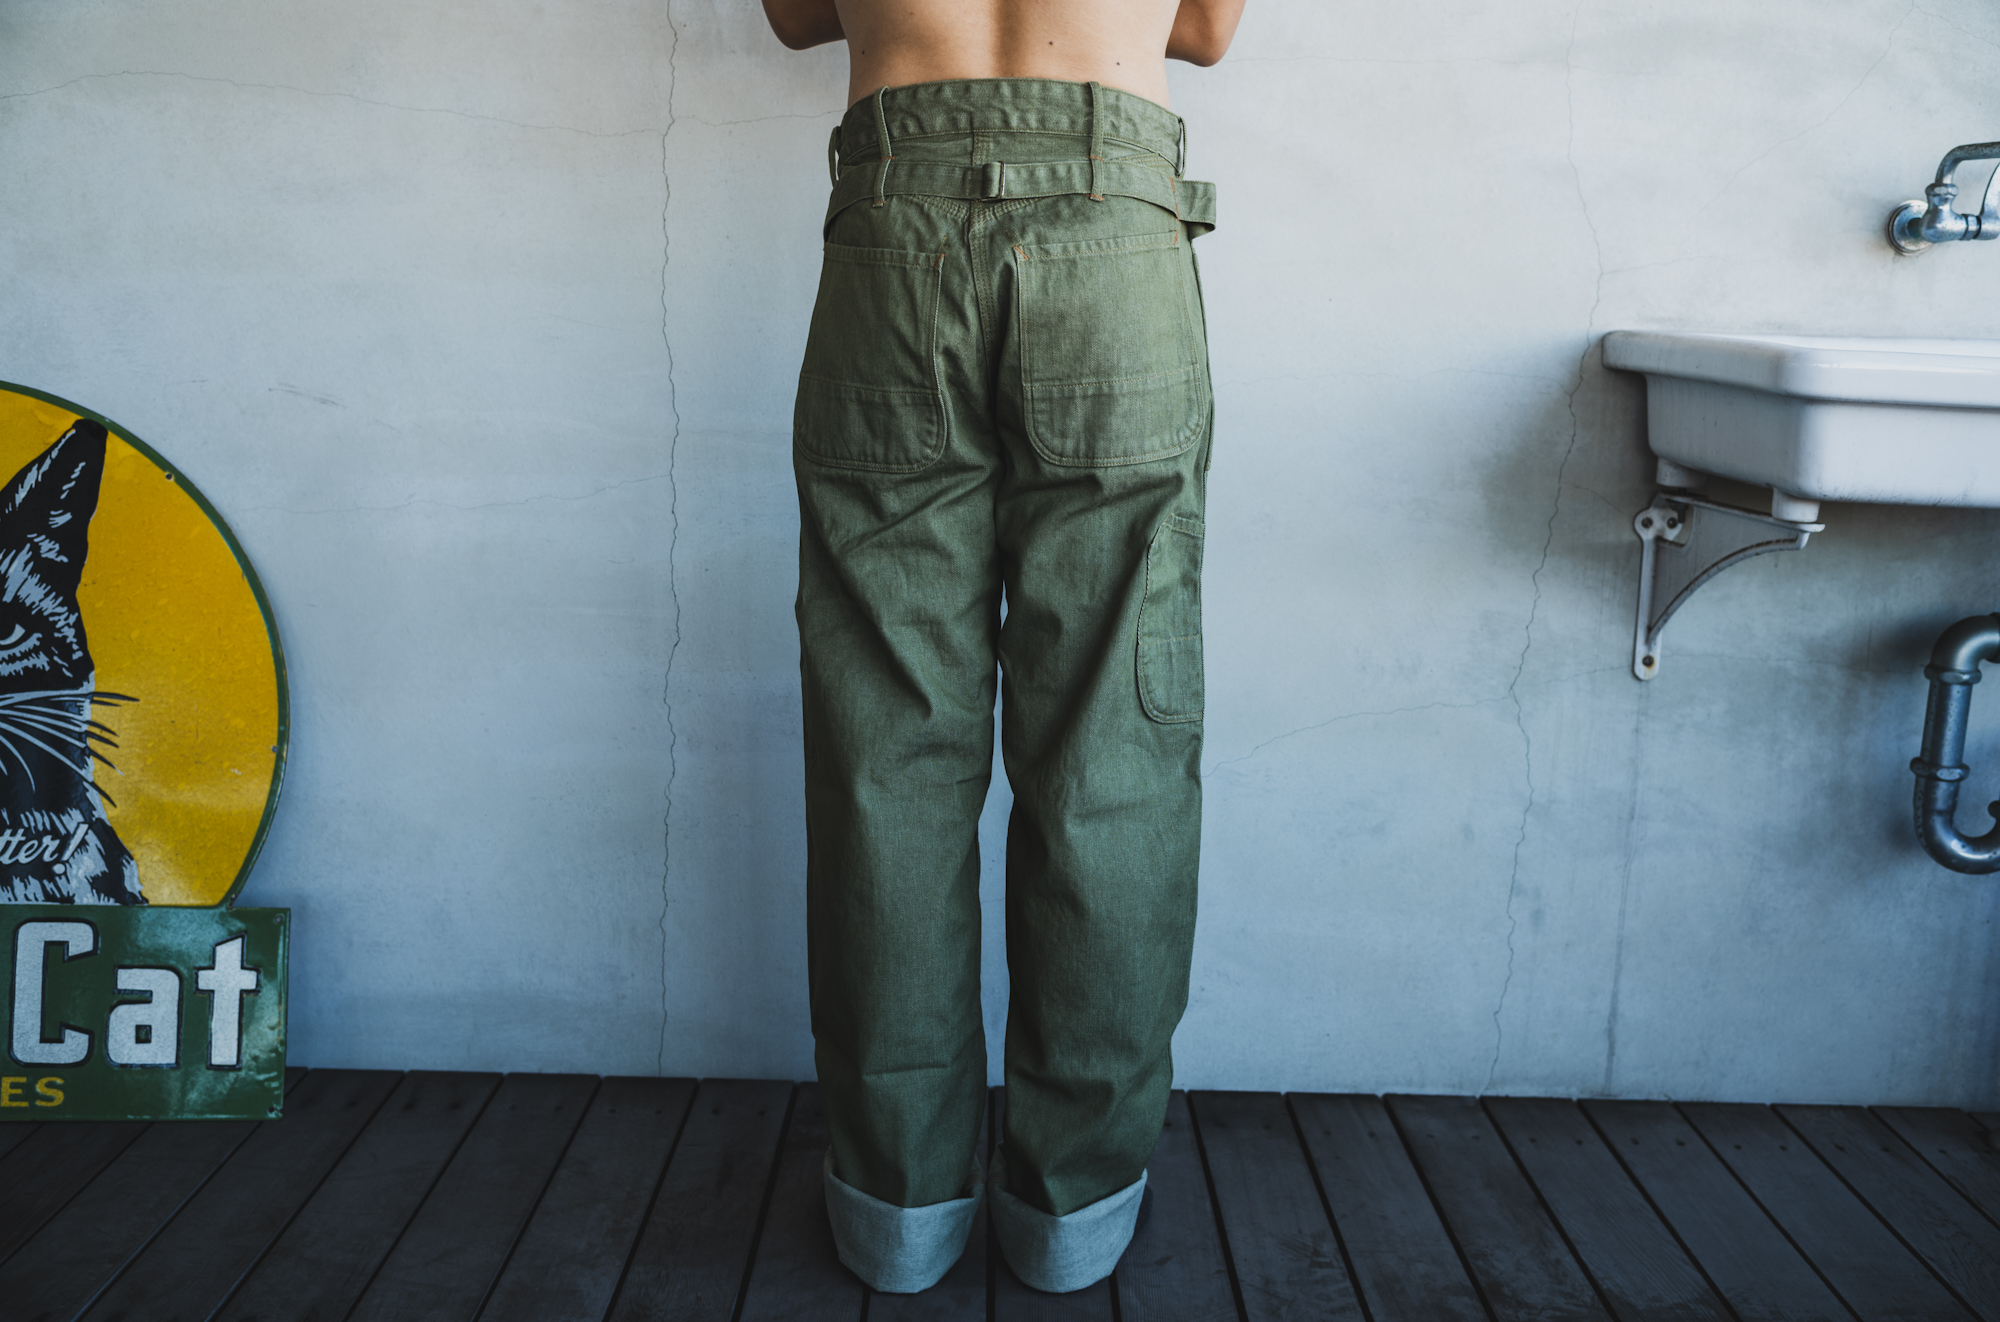 予約開始のお知らせ Tabby's Work Pants Green Denim | TCB jeans